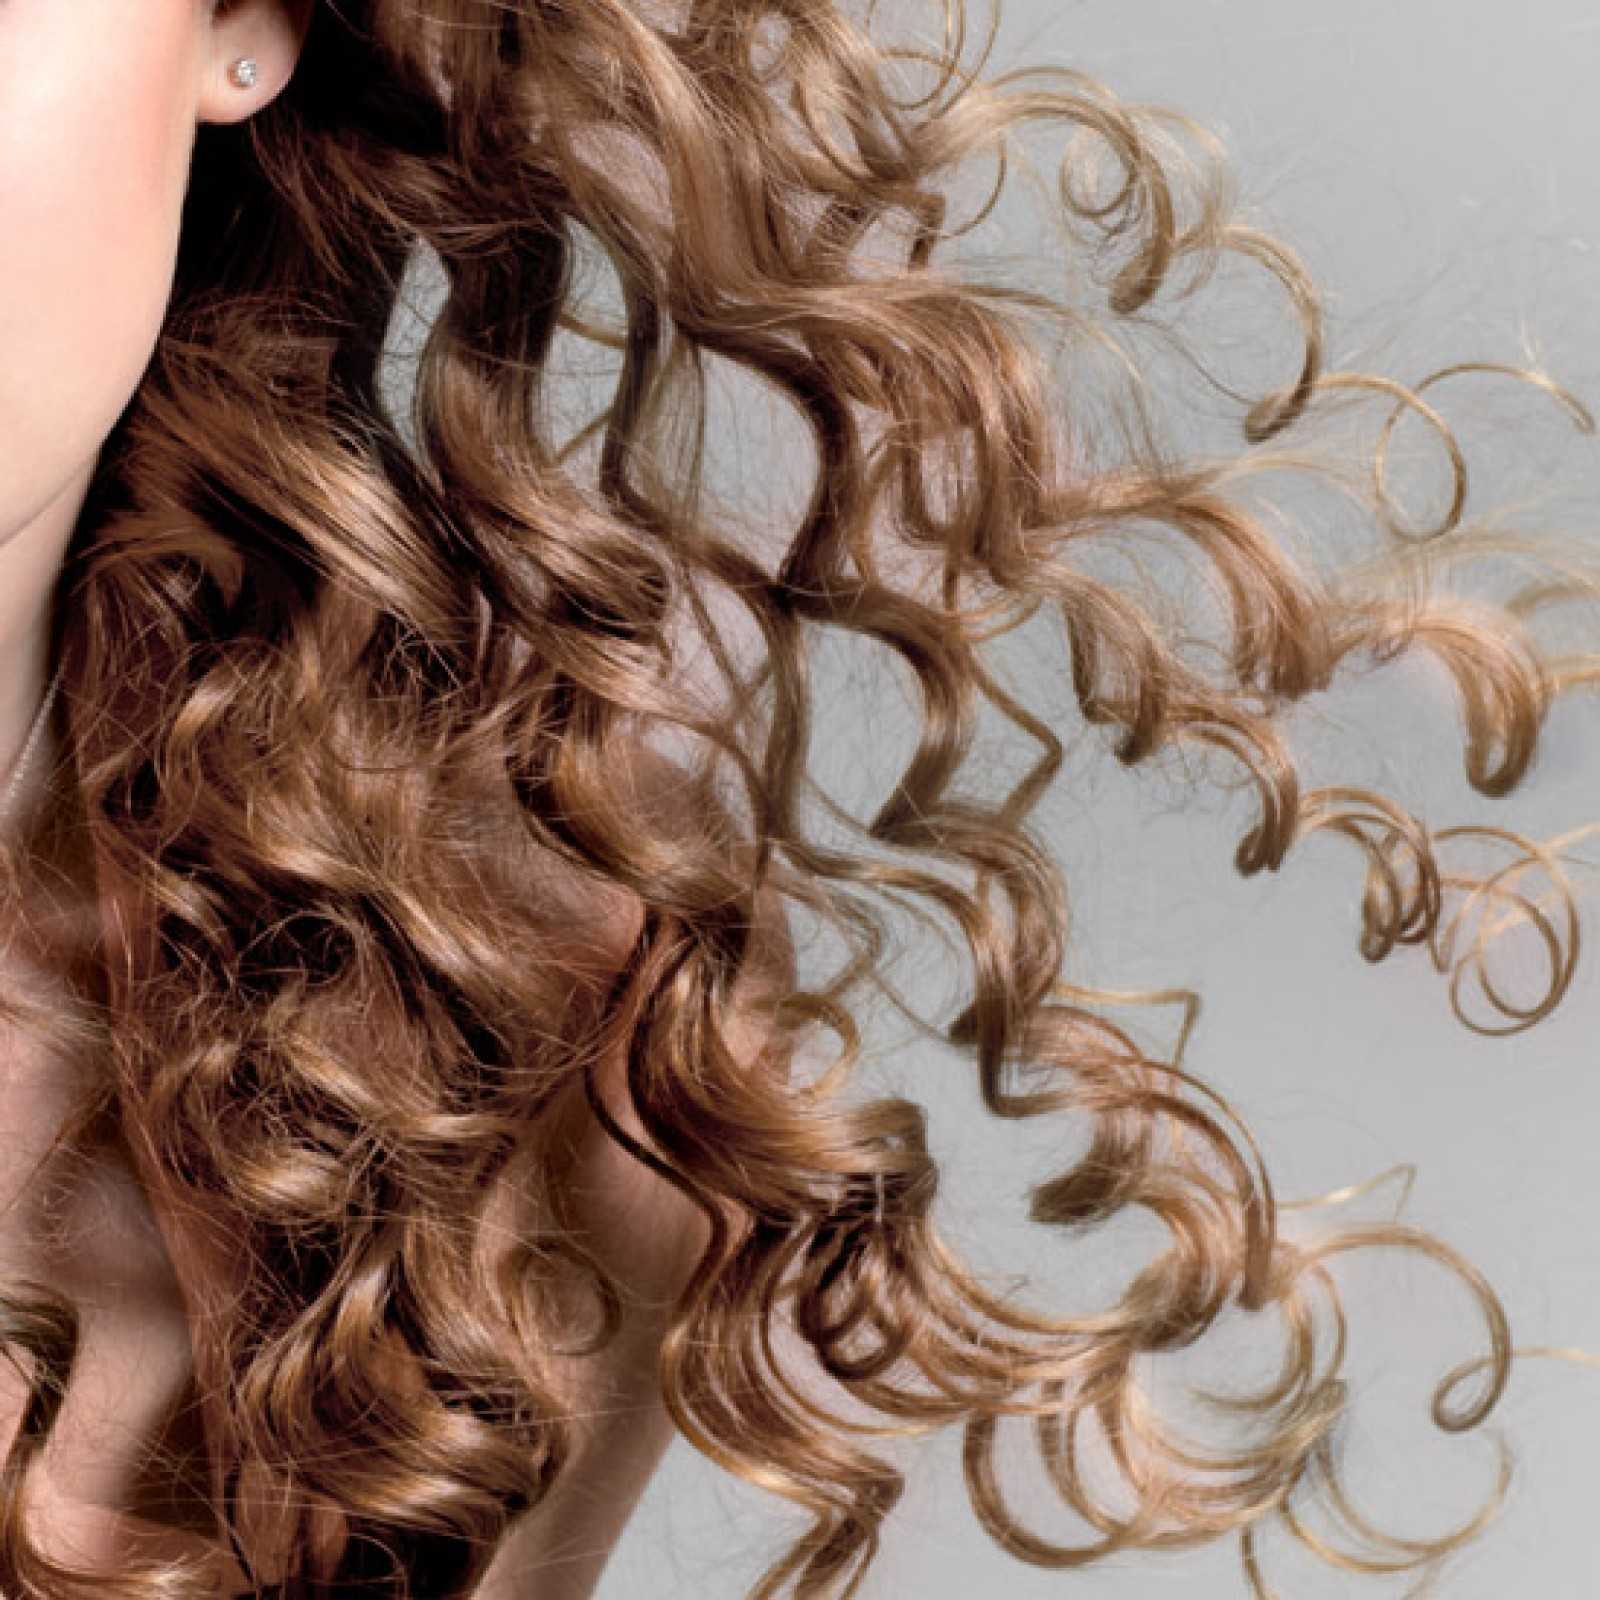 Биозавивка волос: особенности процедуры по созданию красивых и долговечных локонов